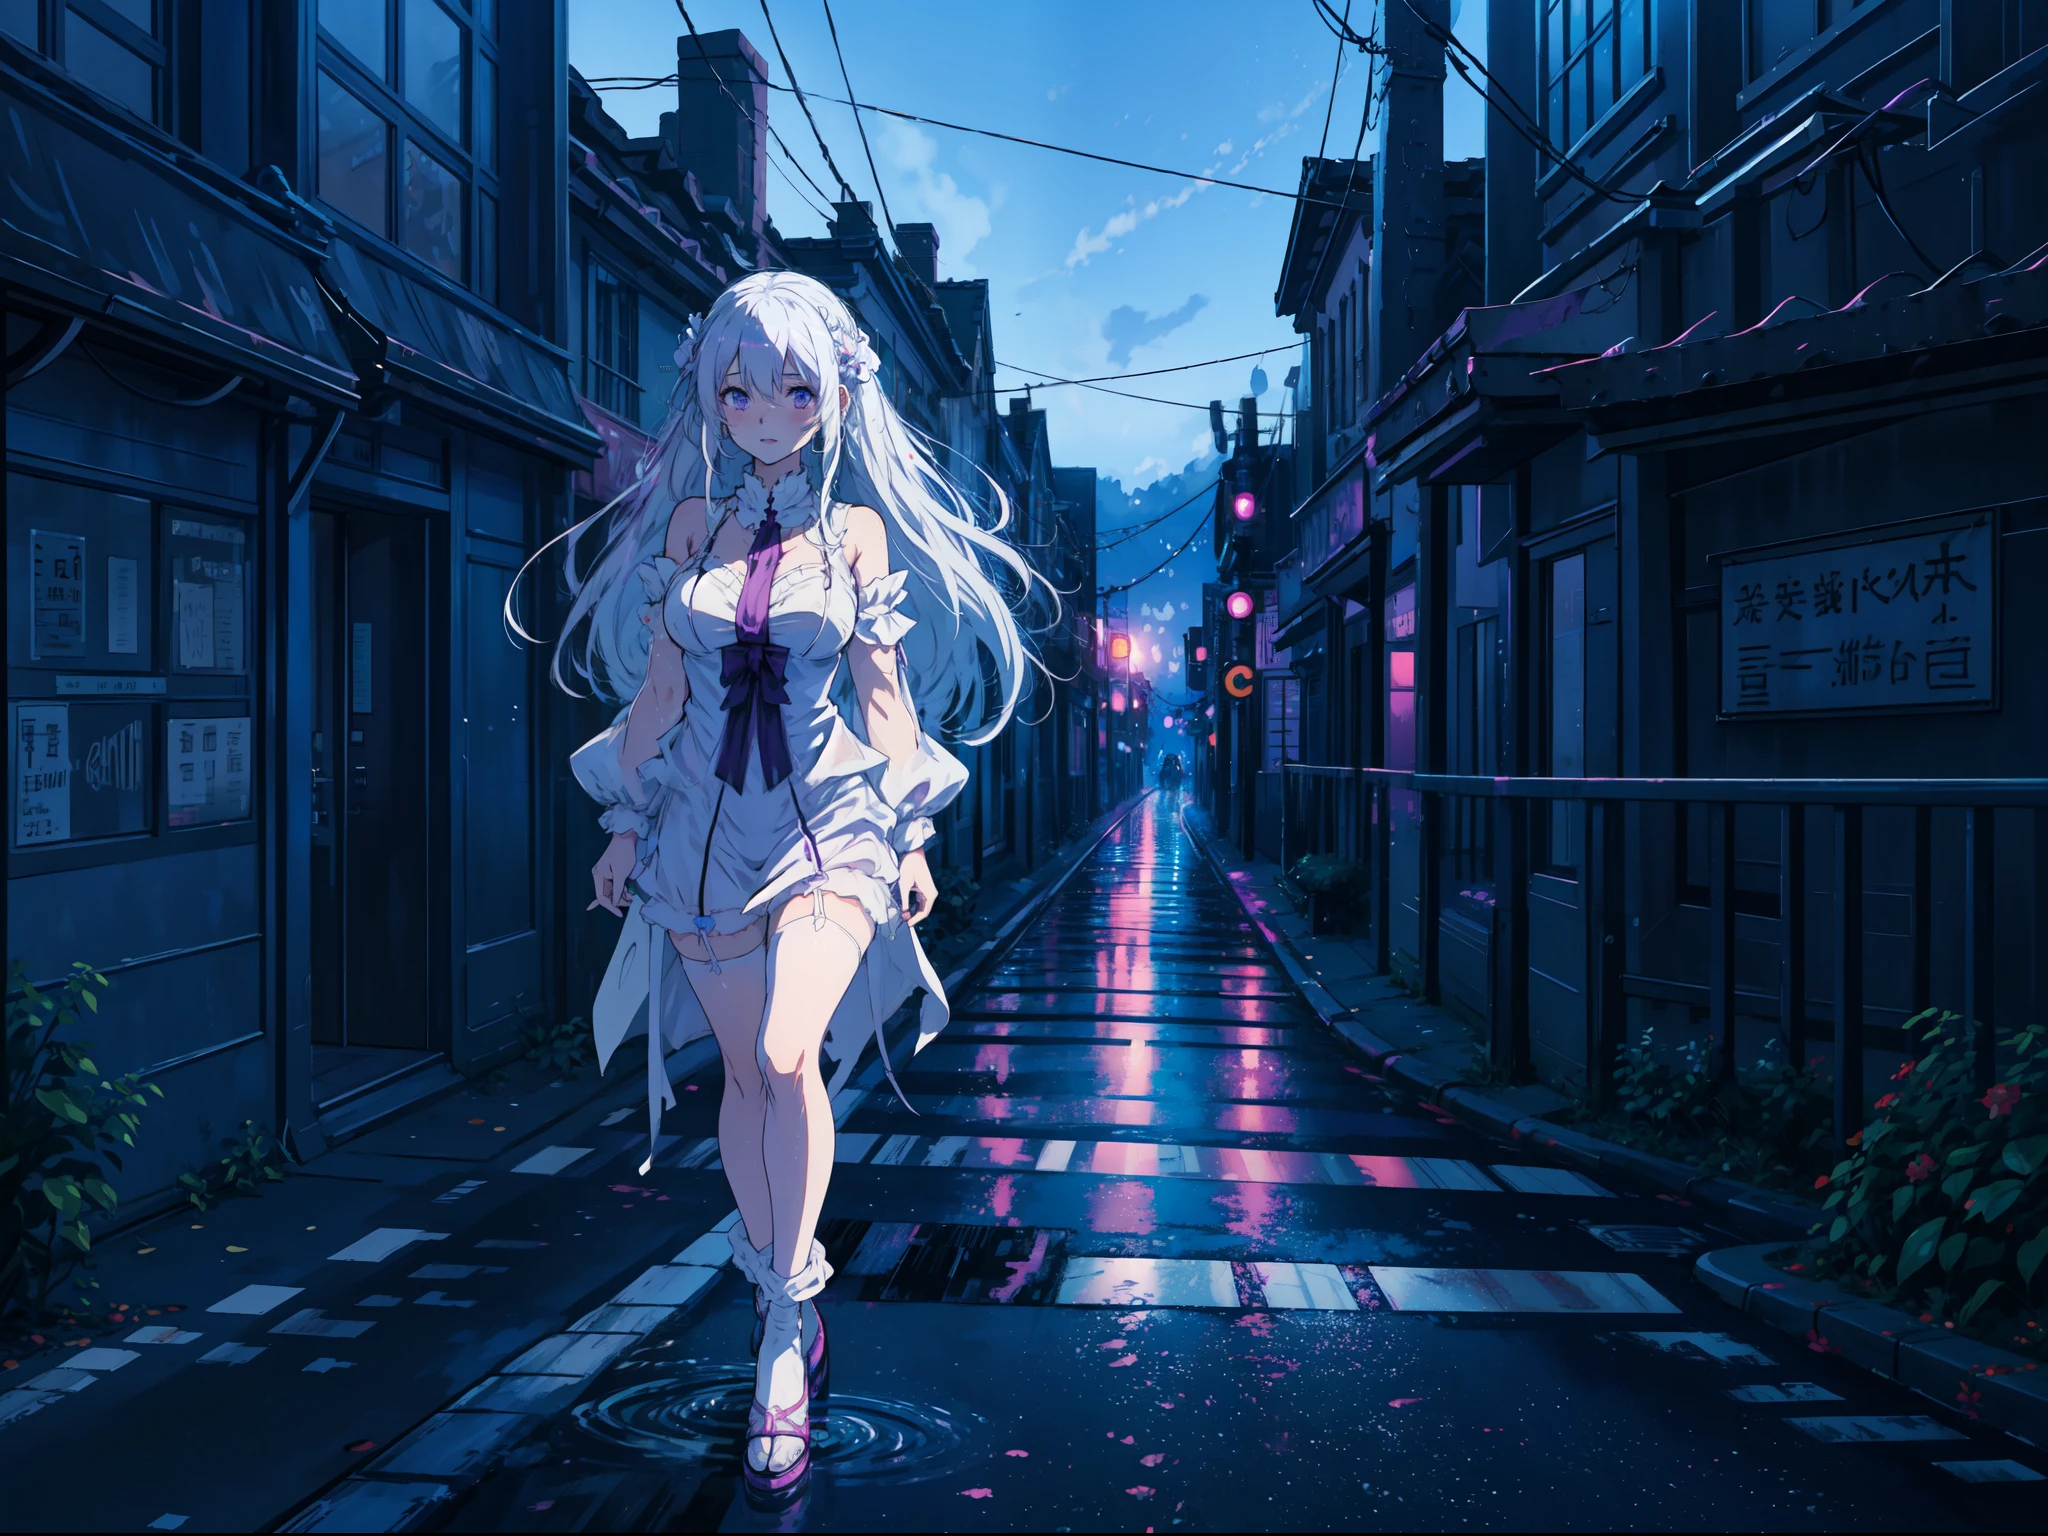 (アニメアートスタイル), リゼロのエミリア,長い白い髪、紫色の目, 赤面する, ランジェリーを着用, 夜の街を歩く, 濡れた道路,鮮やかな色彩, 喜びの表情, 赤面する, ダイナミックなポーズ.